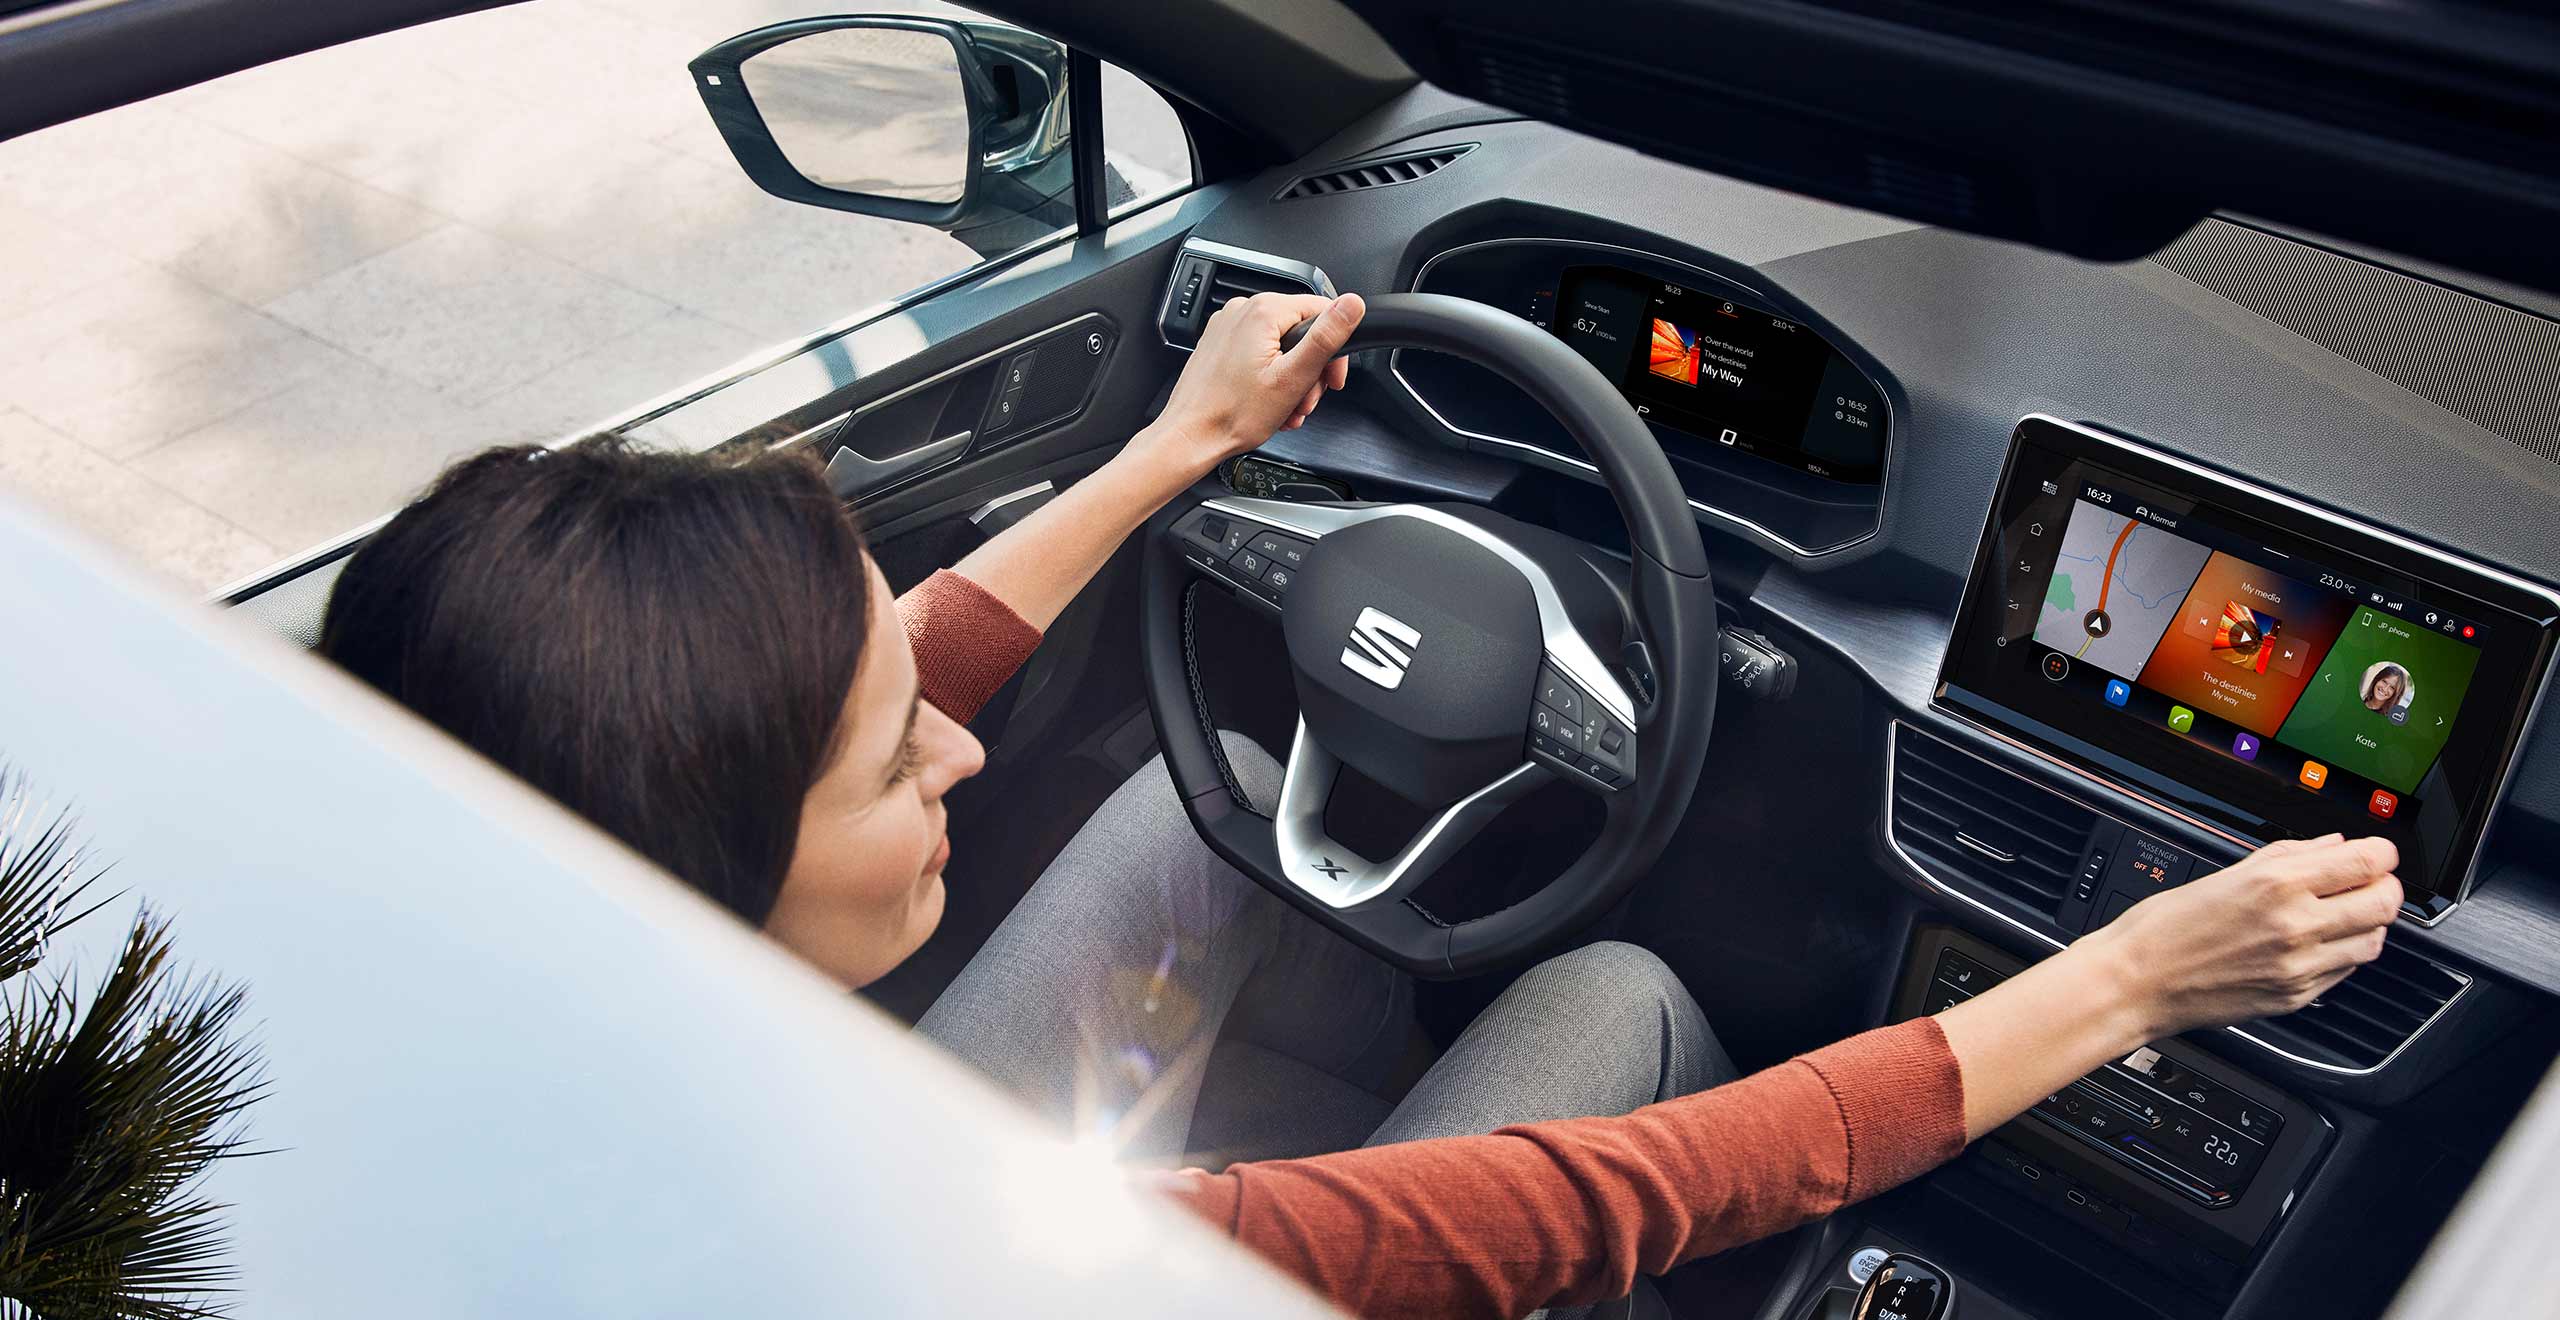 Ekran w samochodzie SEAT Tarraco – zarządzaj wszystkim w łatwiejszy sposób